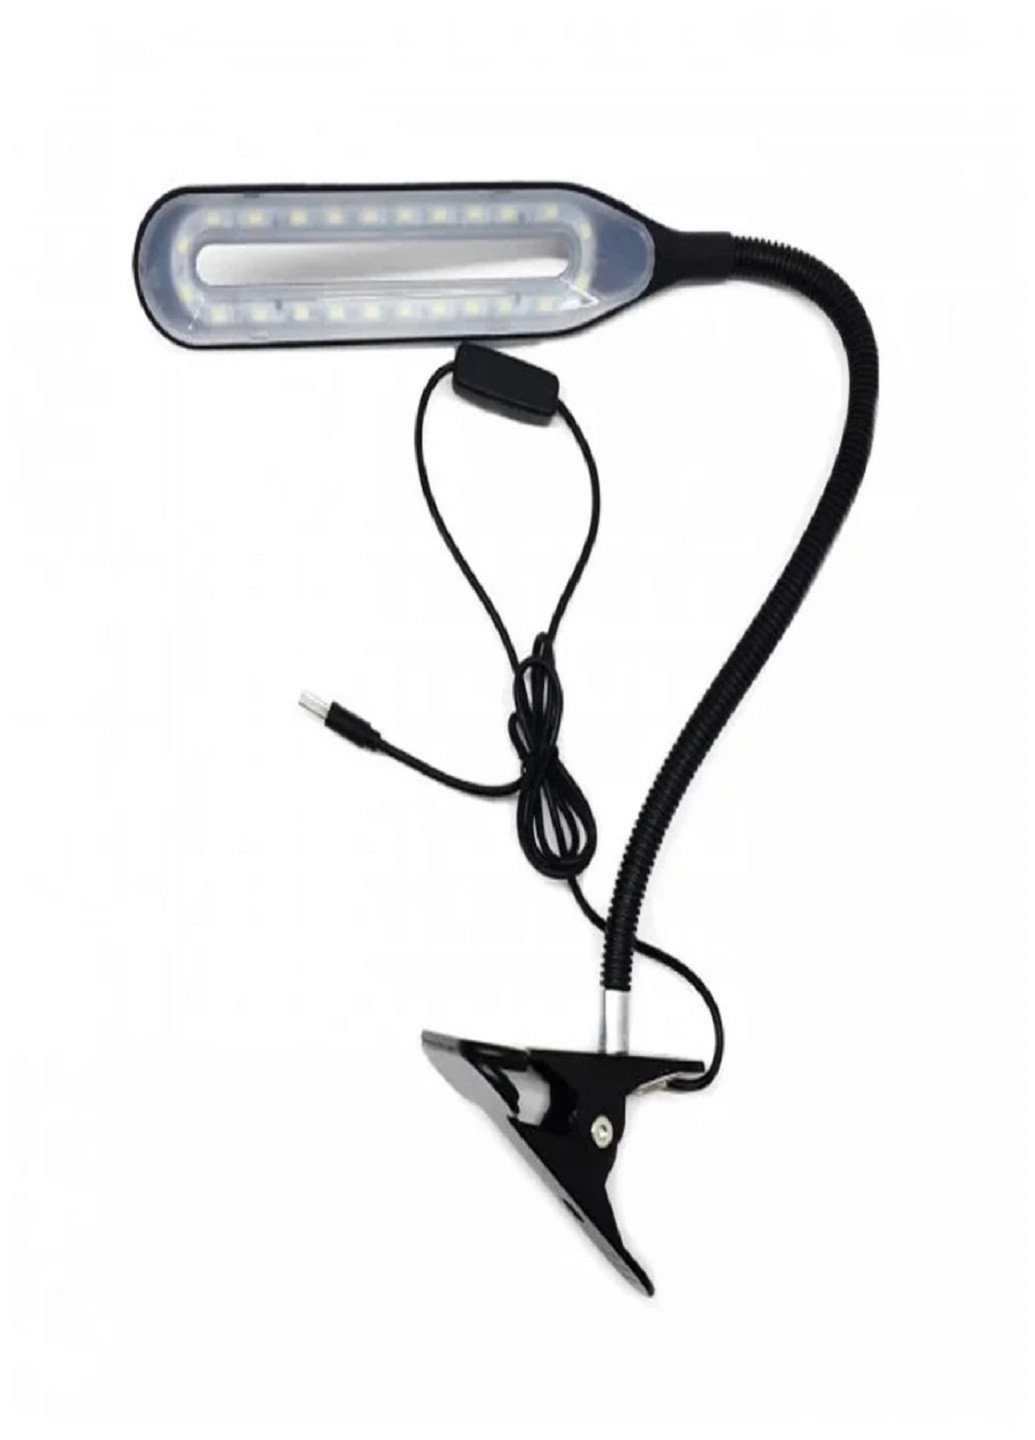 Настольная лампа светодиодная на прищепке гибкая 22 LED диода черная XSD 206 USB кабель VTech (252481177)